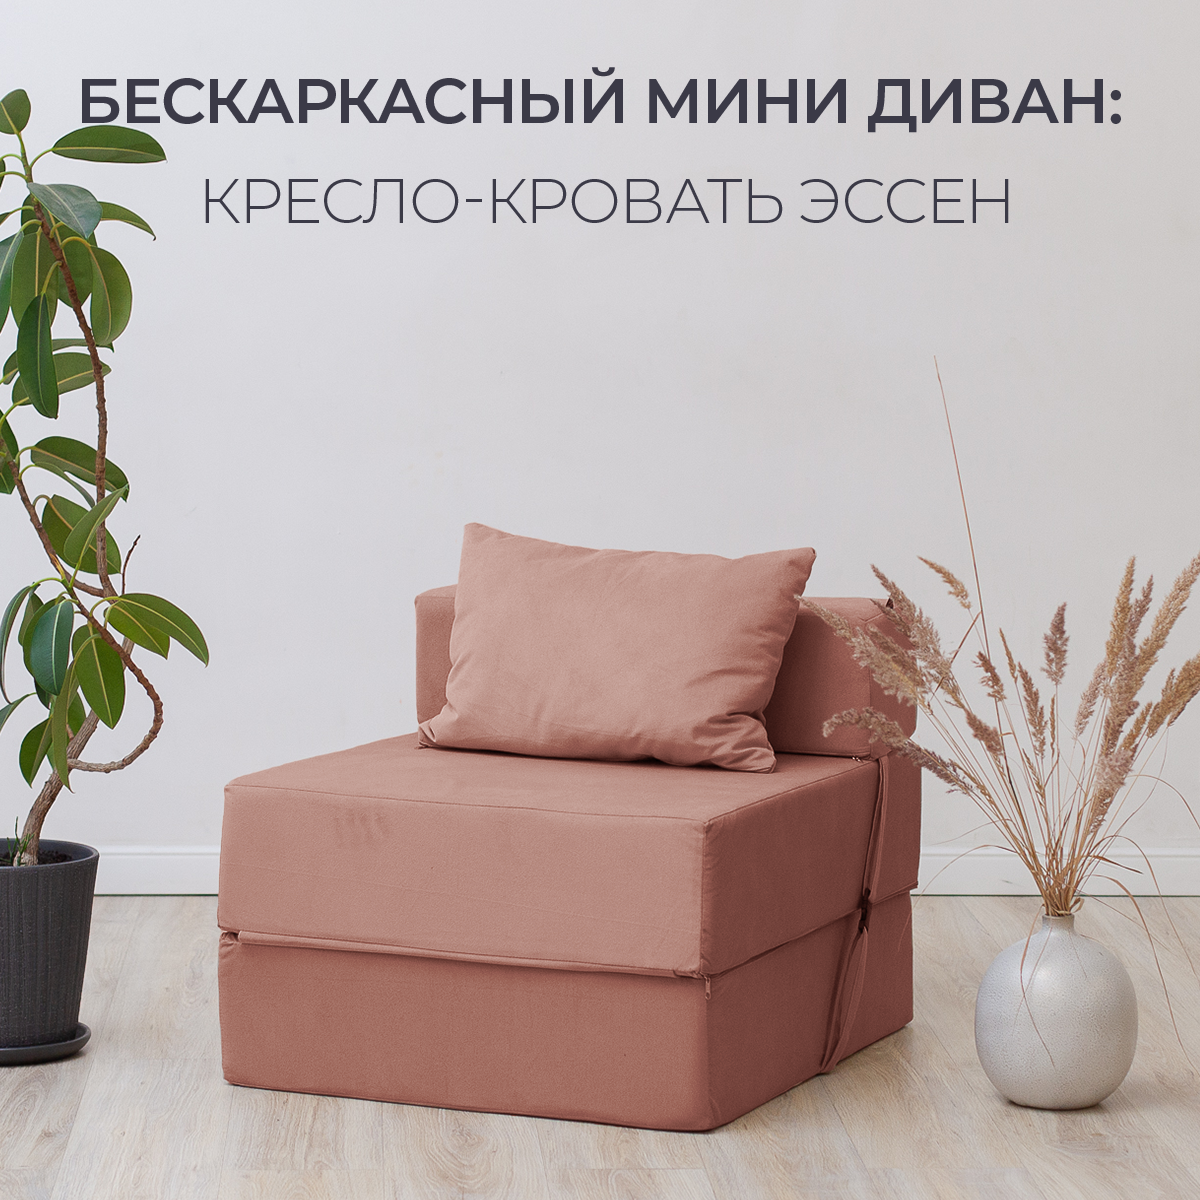 Бескаркасное кресло кровать Эссен, 60х69х78 см, раскладной мини диван трансформер розовый